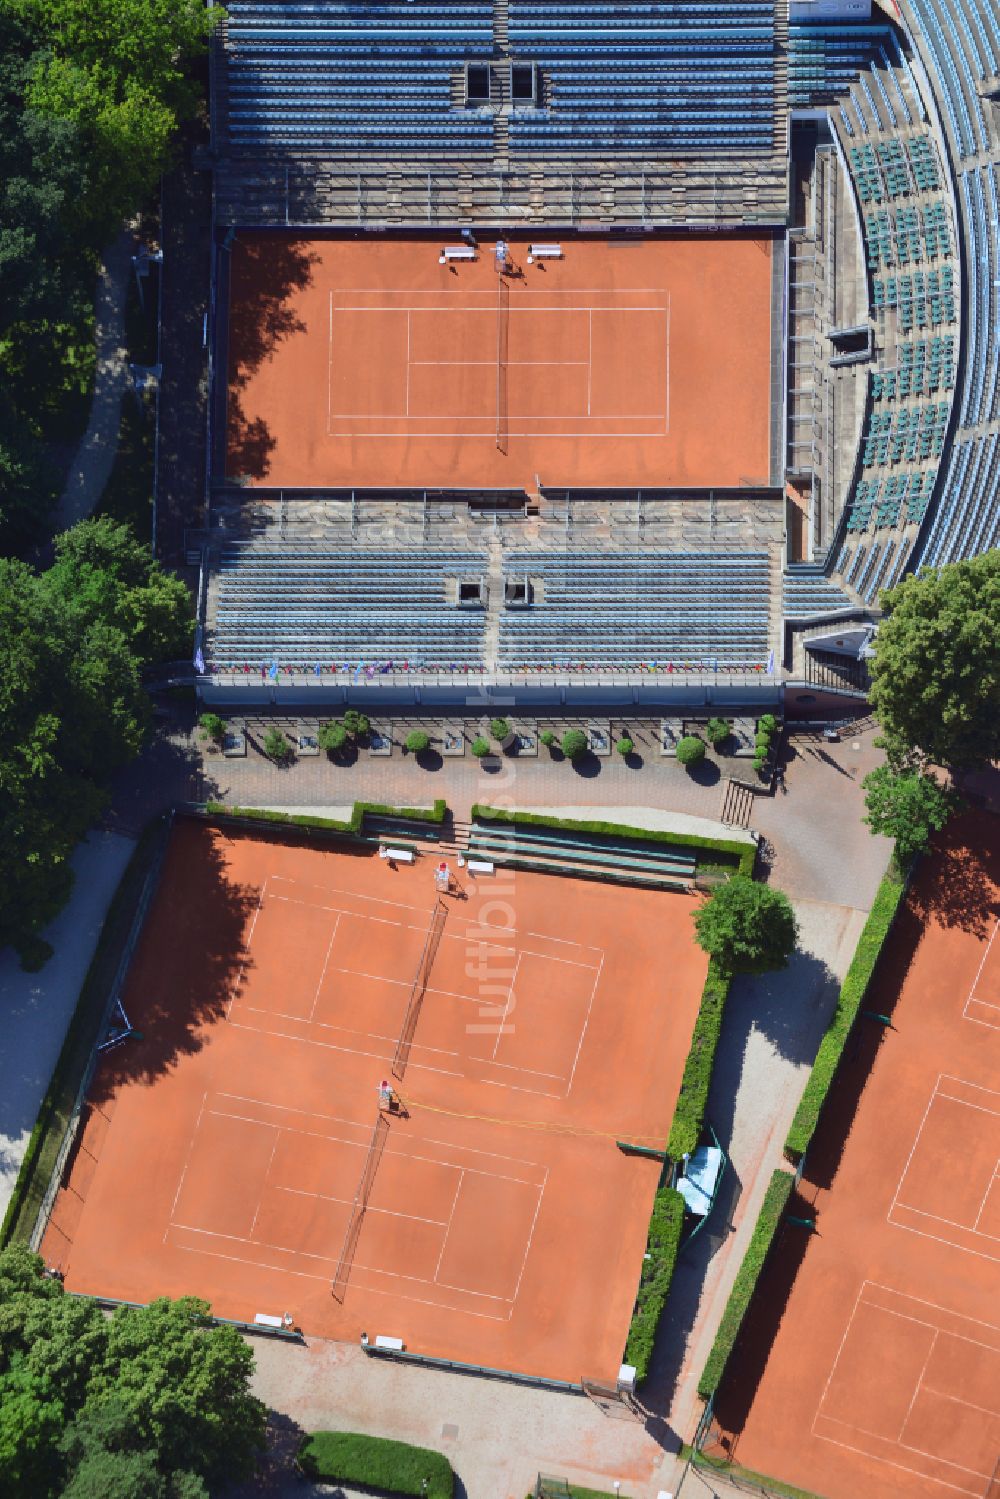 Luftbild Berlin - Rotbraun farbiger Tennisplatz des Tennis-Club 1899 e.V. Blau-Weiss in Berlin, Deutschland